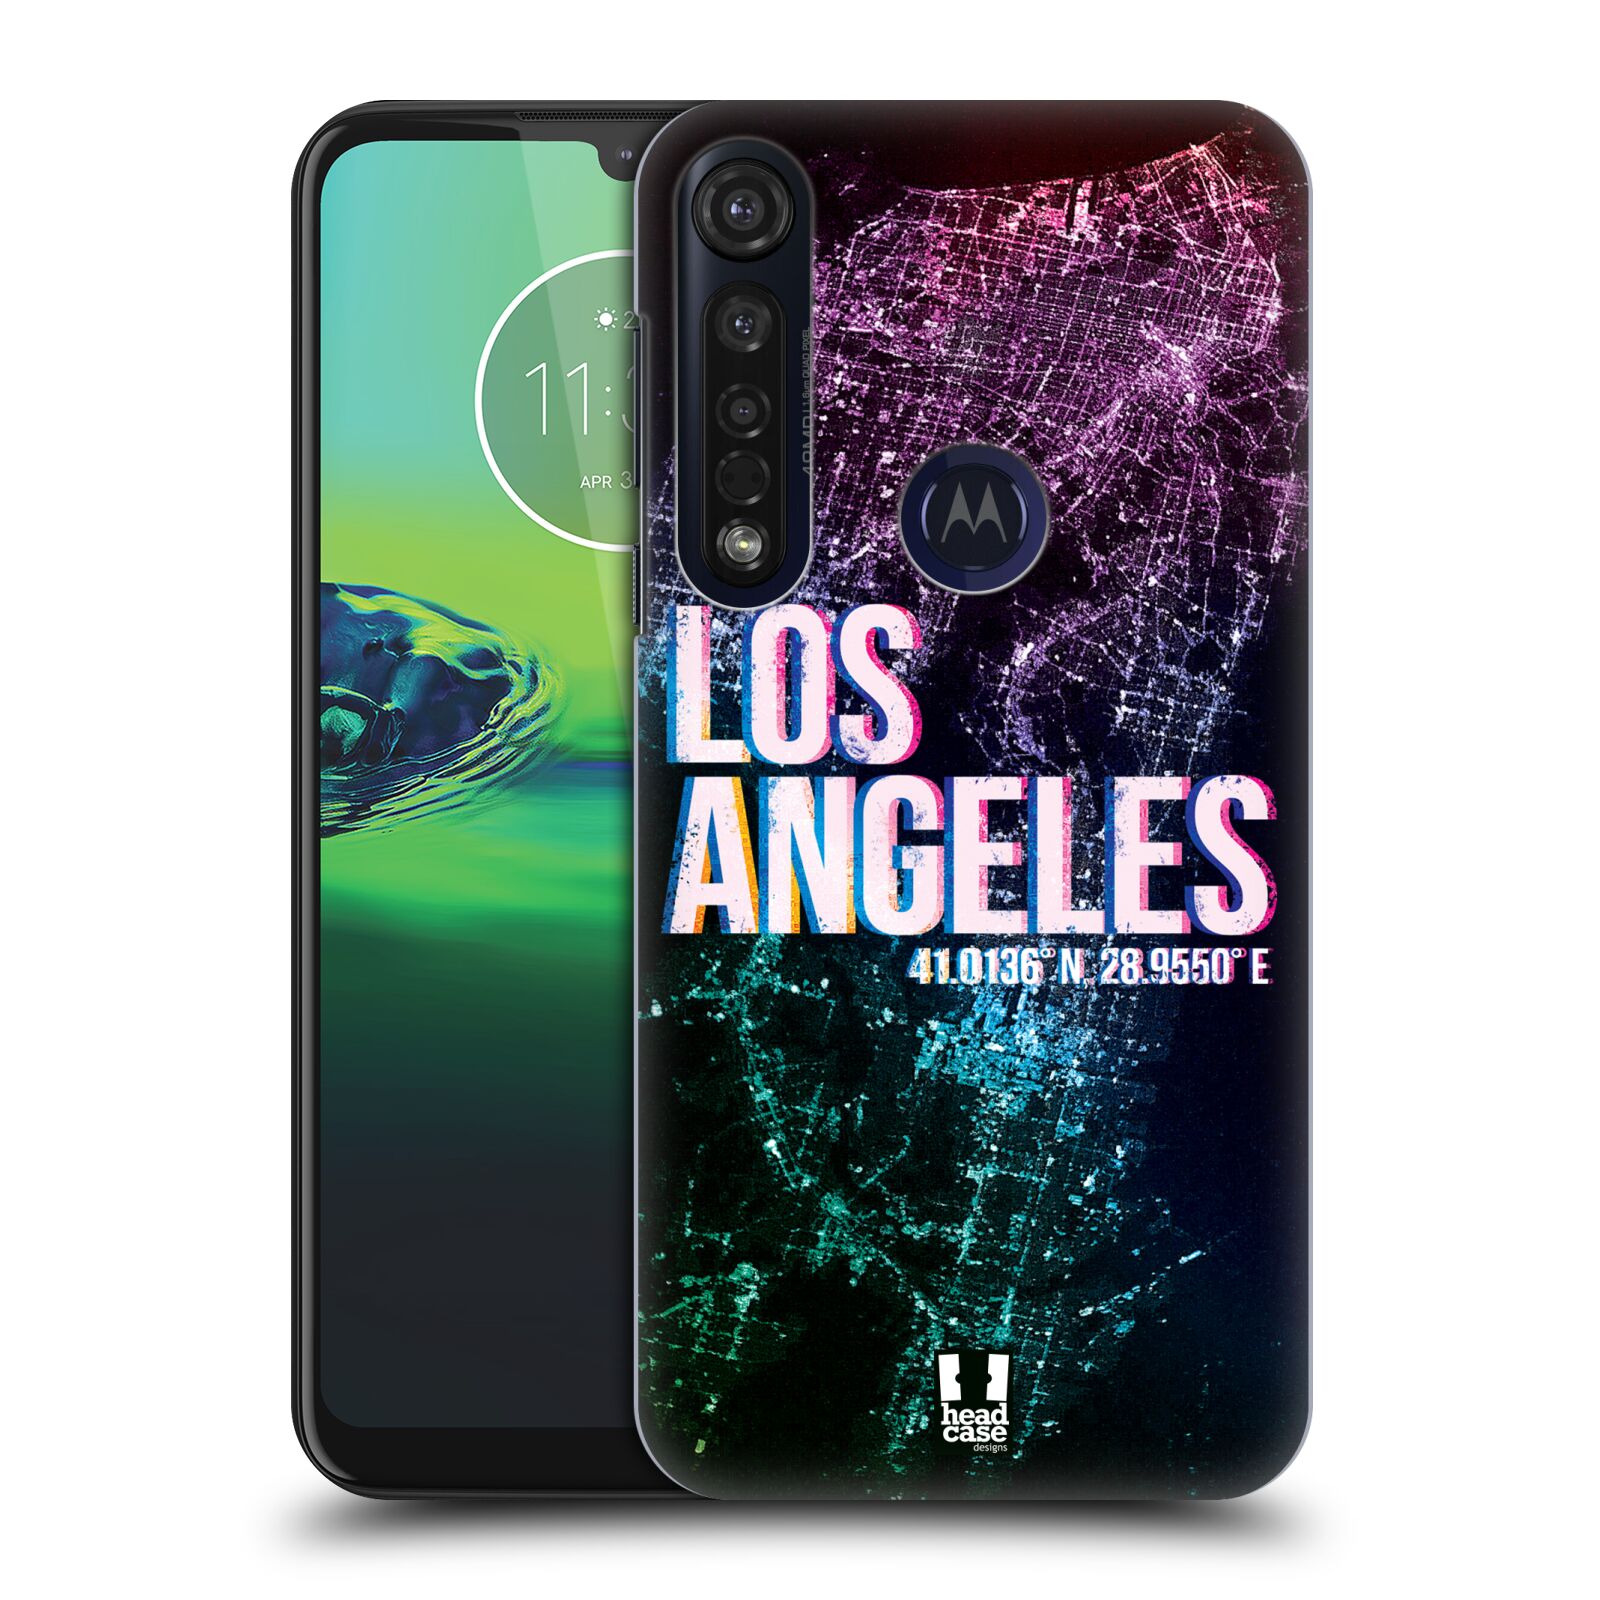 Pouzdro na mobil Motorola Moto G8 PLUS - HEAD CASE - vzor Světla známých měst, Satelitní snímky fialová USA, LOS ANGELES